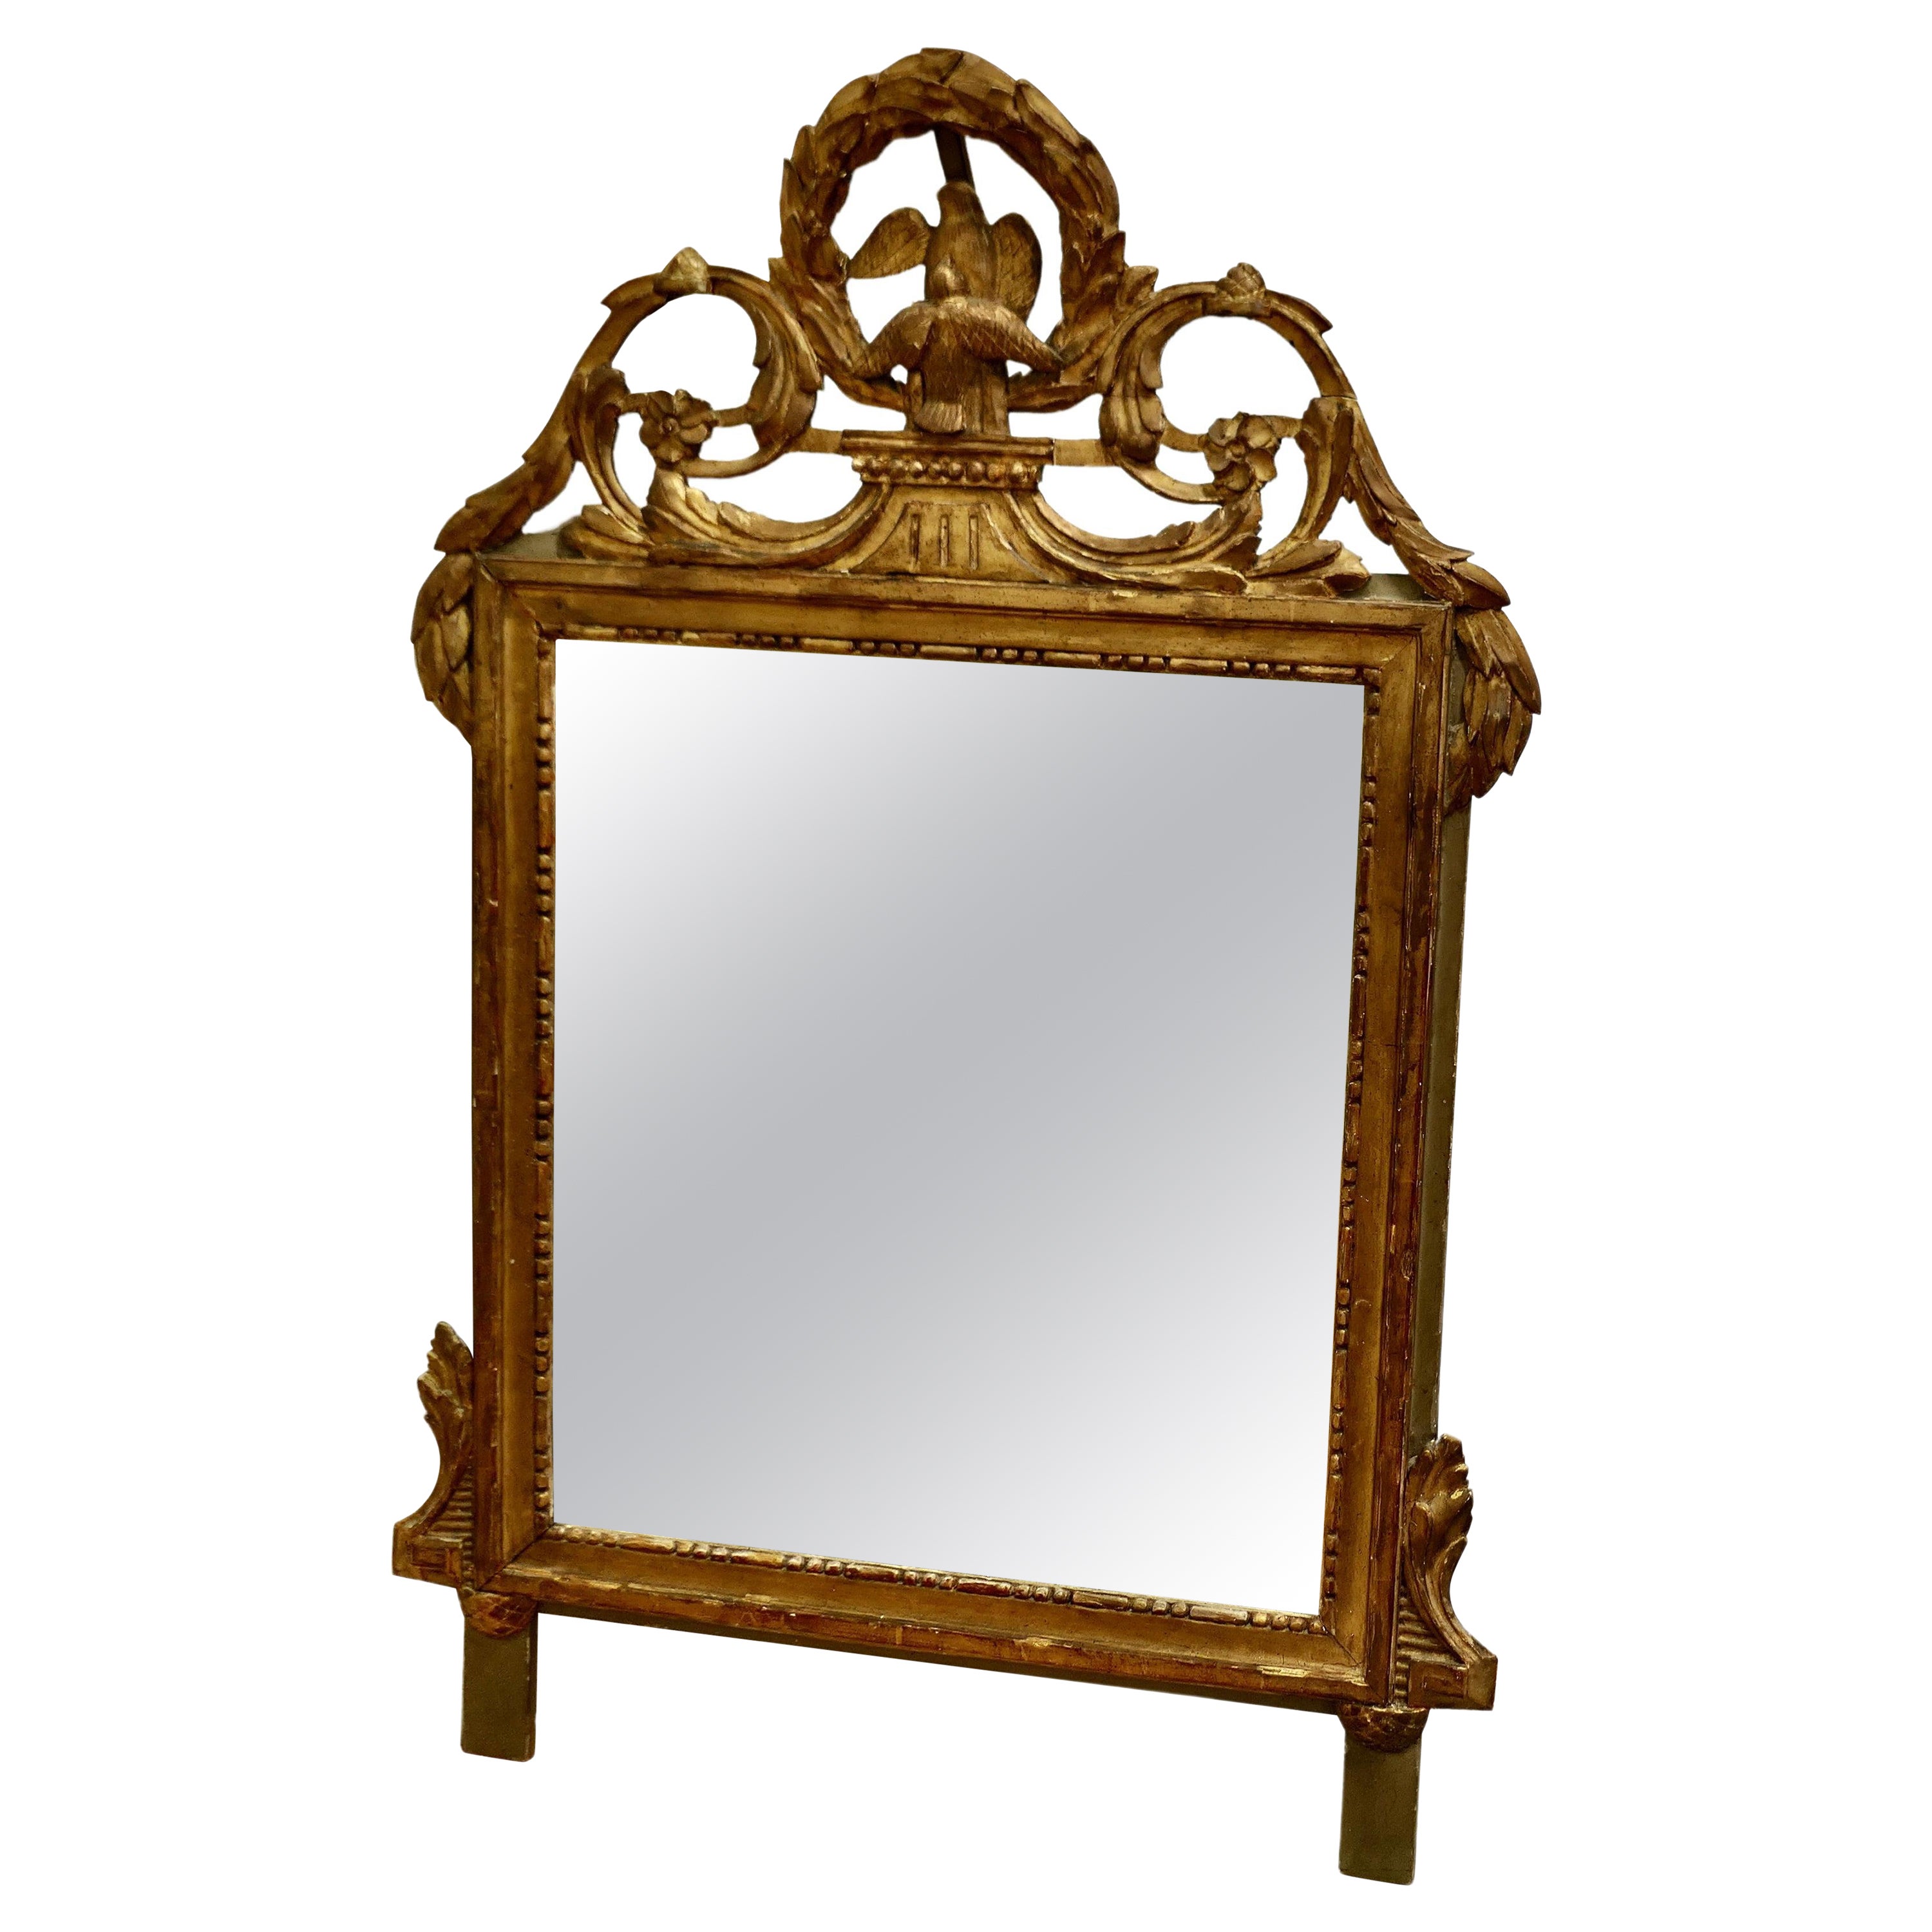 Napoleon III, Crested Wall Mirror